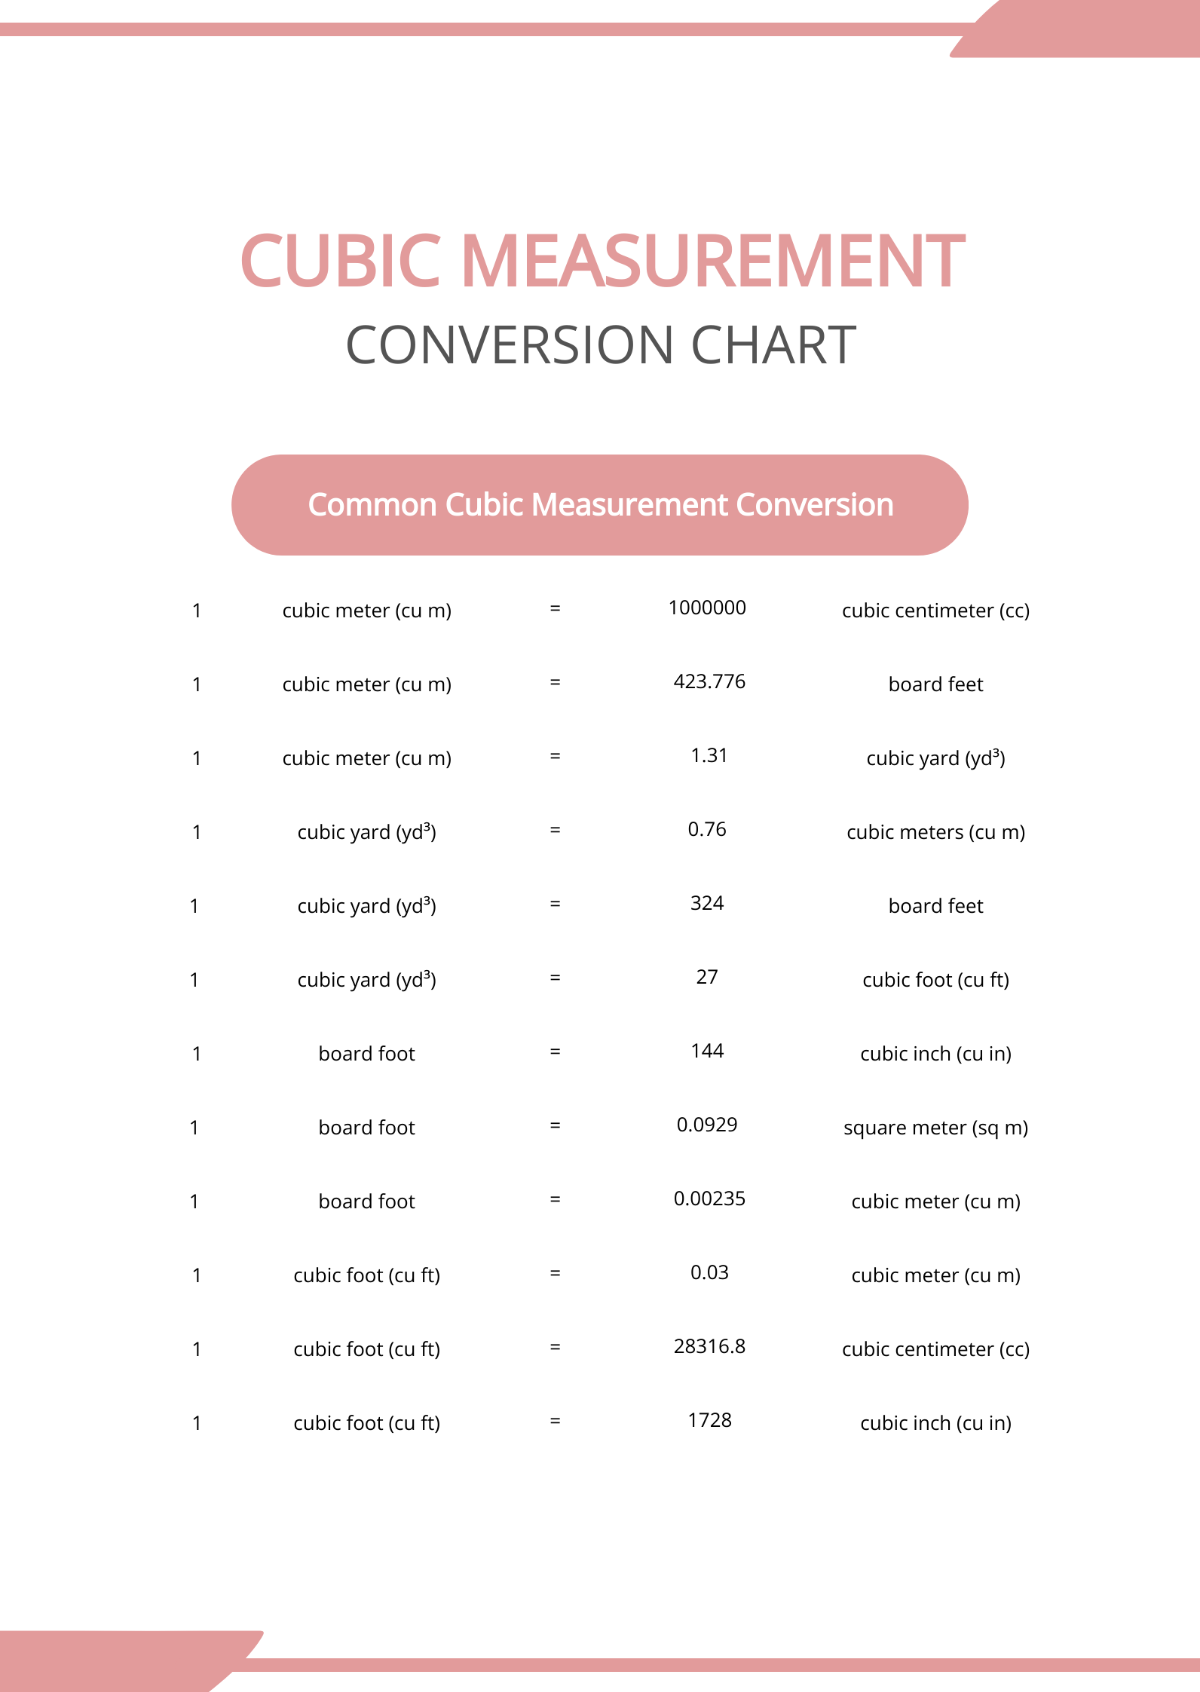 Cubic Measurement Conversion Chart Template